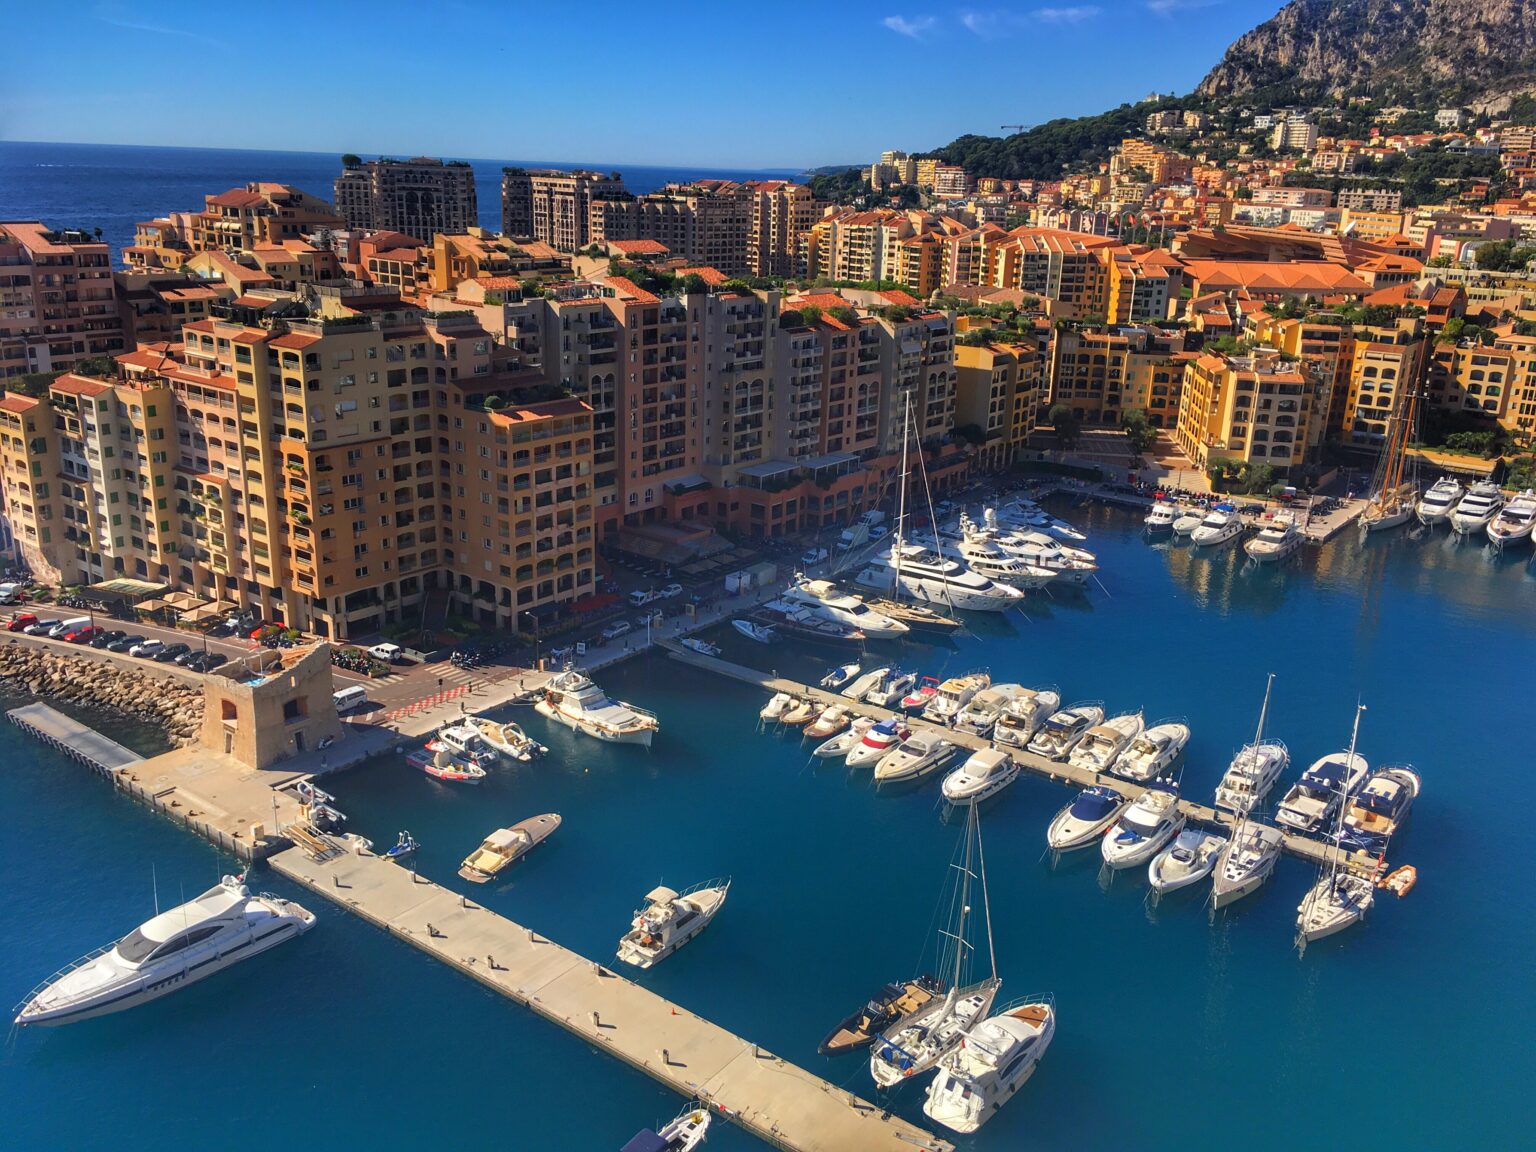 Blick auf das Fürstentum Monaco, aufgenommen aus der Luft